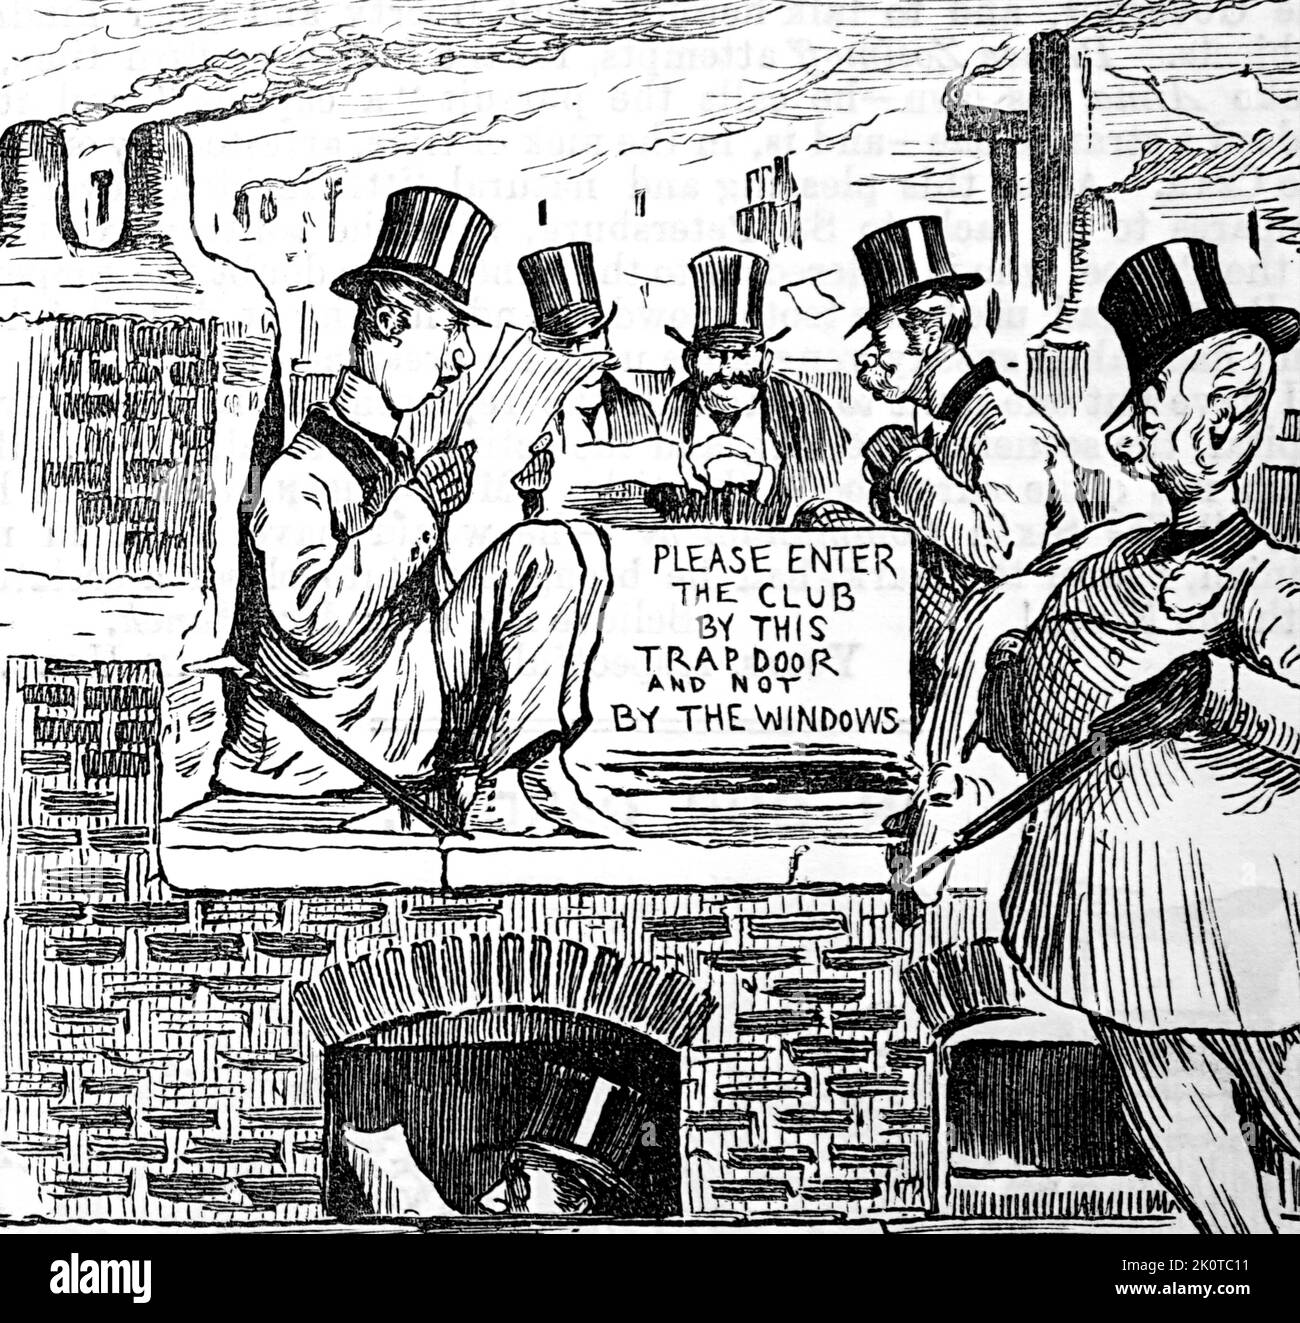 Caricature représentant des hommes anglais de classe supérieure rassemblés furtivement sur un toit du London Gentlemen's Club. Daté du 19th siècle Banque D'Images